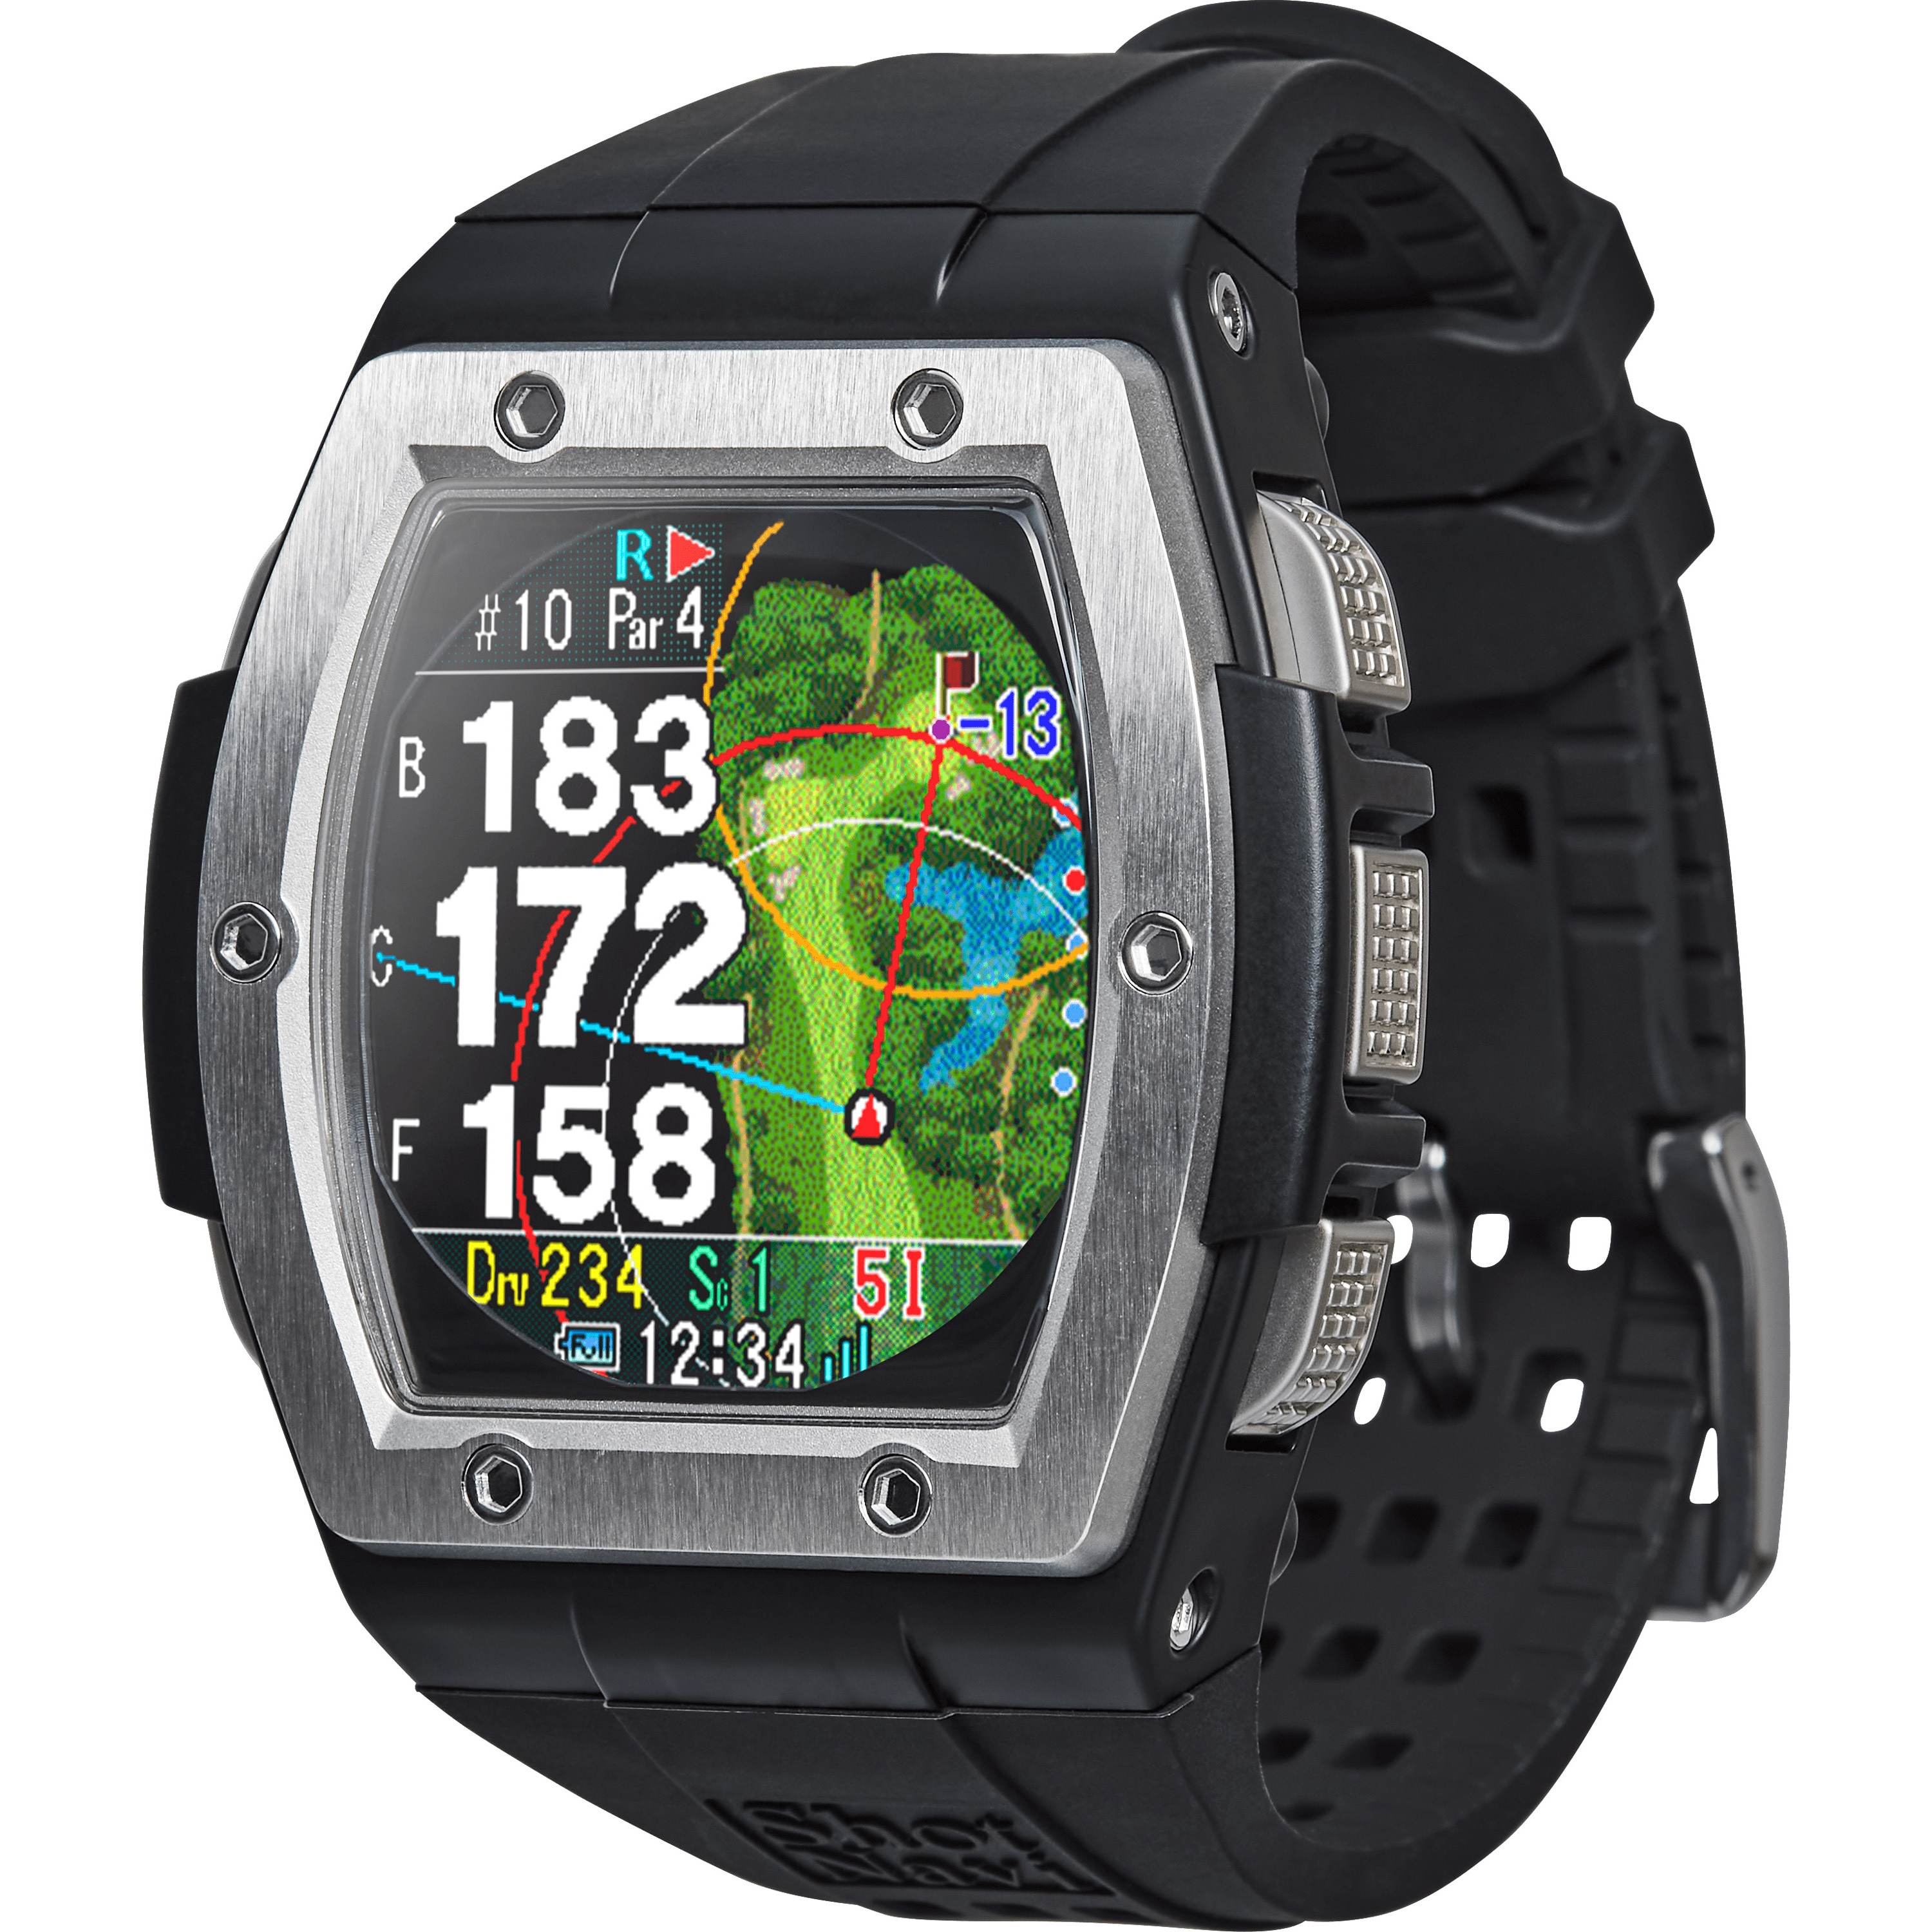 新品 ショットナビ 距離測定器 W1 Evolve 腕時計型 GPSナビ BK 